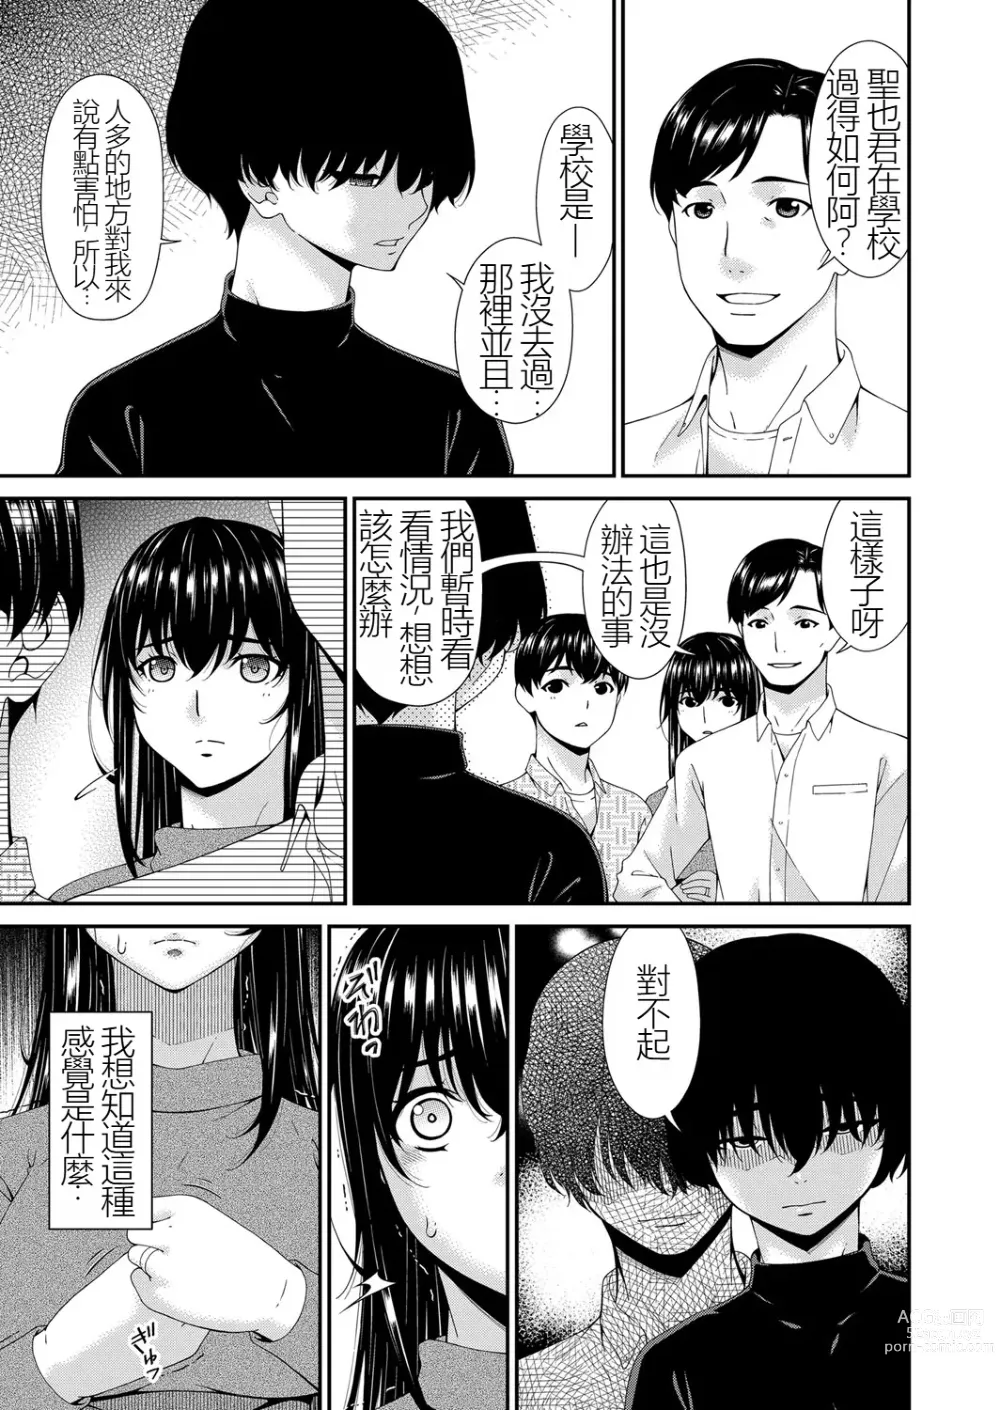 Page 9 of manga Saiin Kazoku Completed